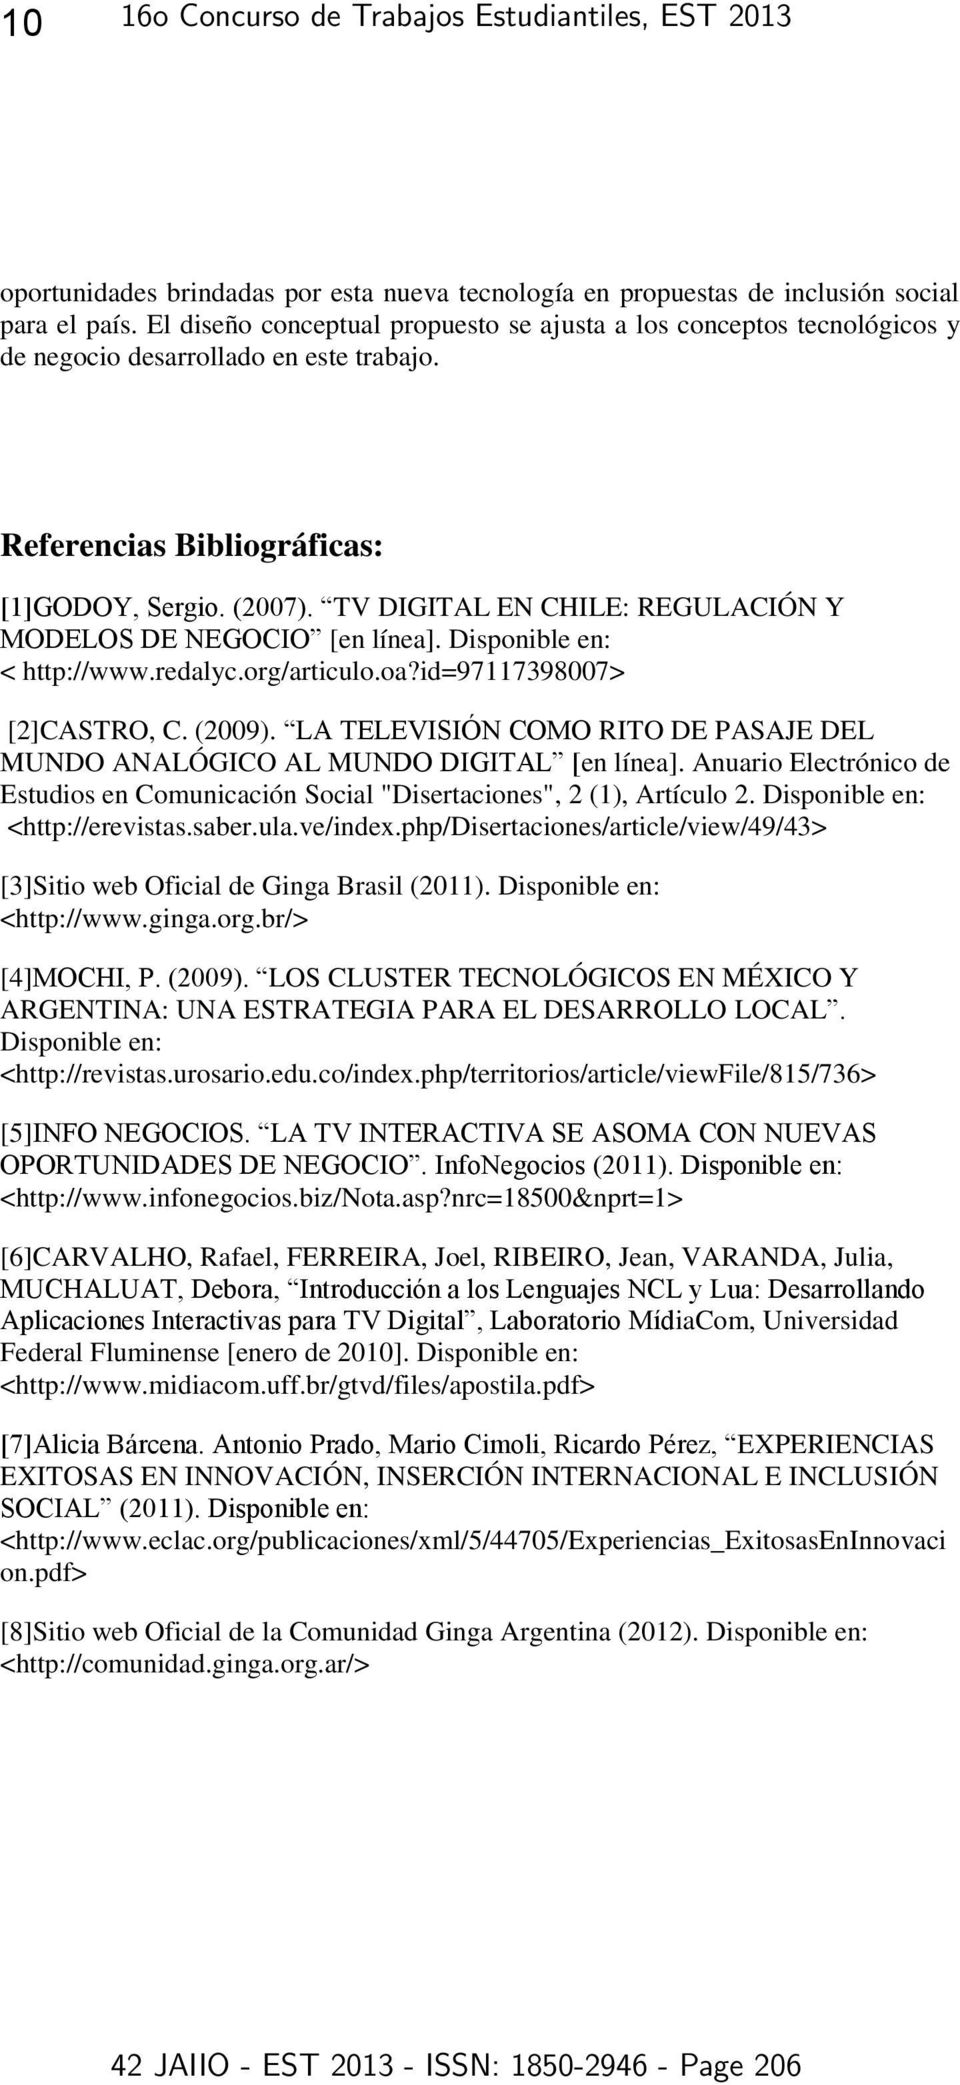 TV DIGITAL EN CHILE: REGULACIÓN Y MO ELO E NEGO O [en línea]. Disponible en: < http://www.redalyc.org/articulo.oa?id=97117398007> [2]CASTRO, C. (2009).